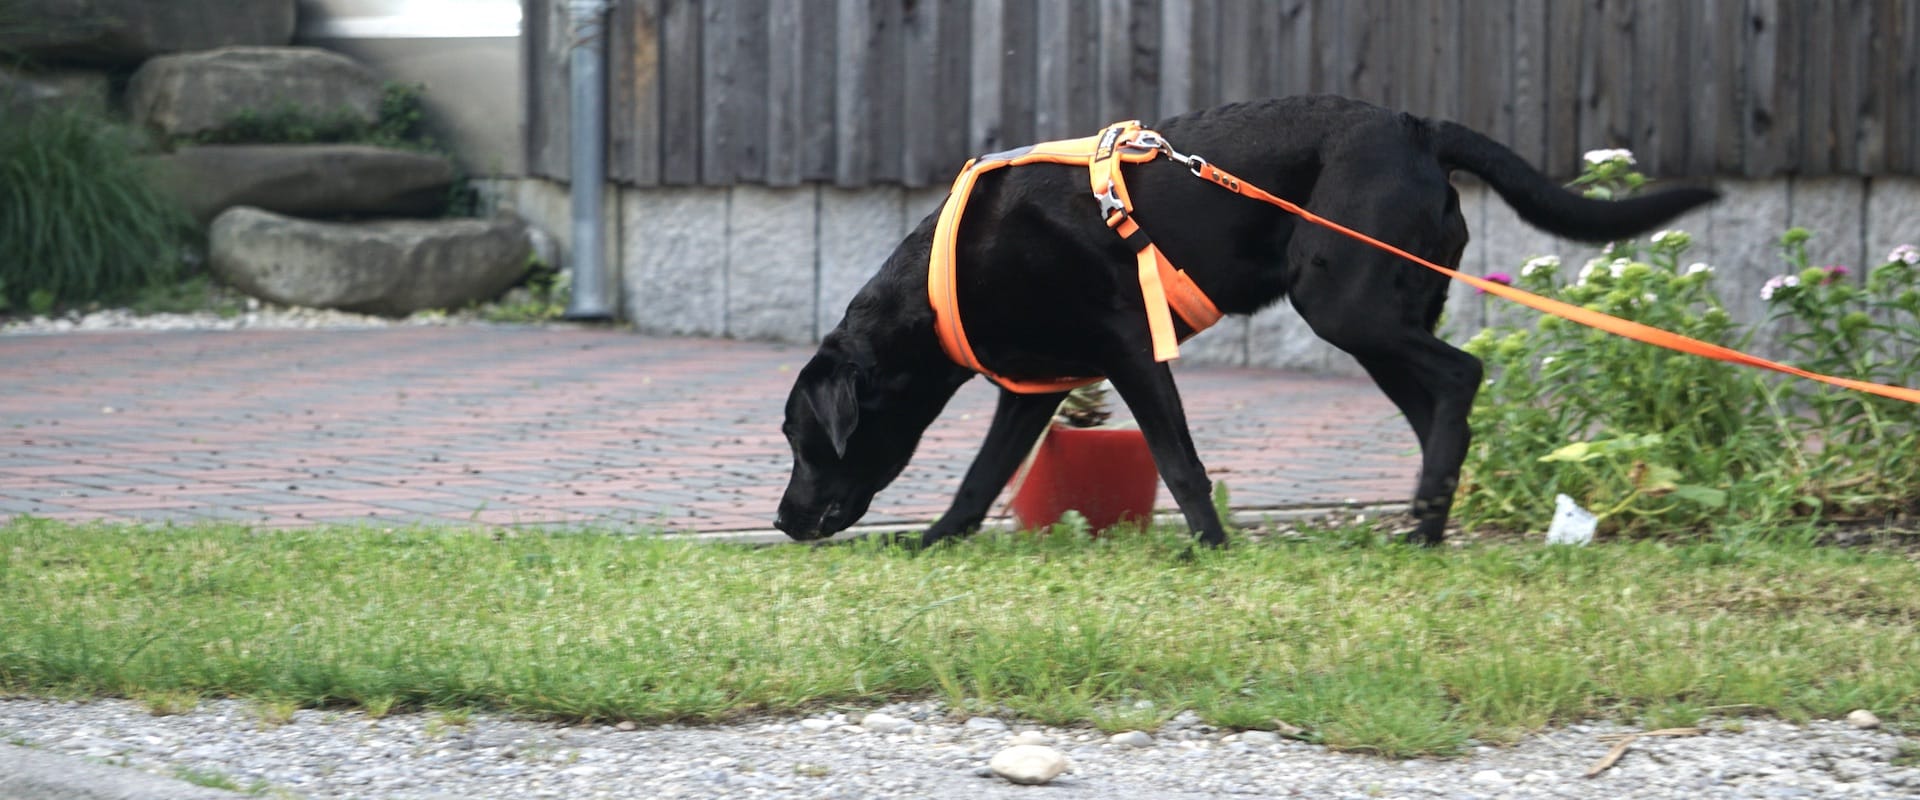 Schwarzer Hund mit tiefer Nase und orangefarbenem Brustgeschirr läuft auf Gras.